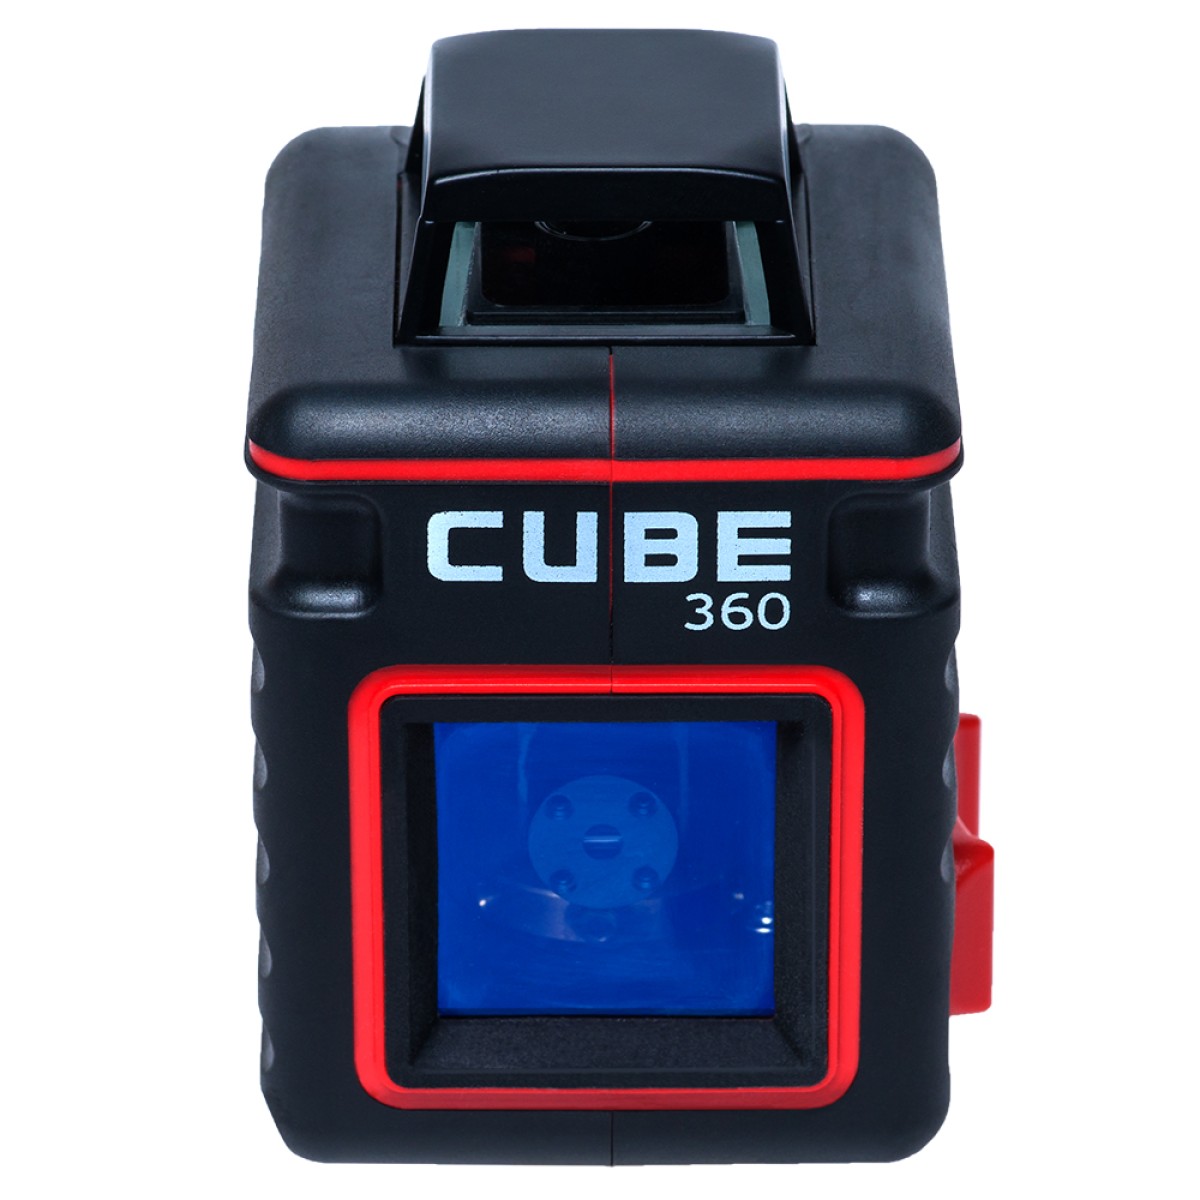 Cube 360 basic edition. Нивелир лазерный ada Cube 360 professional Edition. Лазерный уровень Cube 2-360. Лазерный уровень ada instruments Cube 2-360 Basic Edition, а00447. Ada Cube 360 Basic Edition.